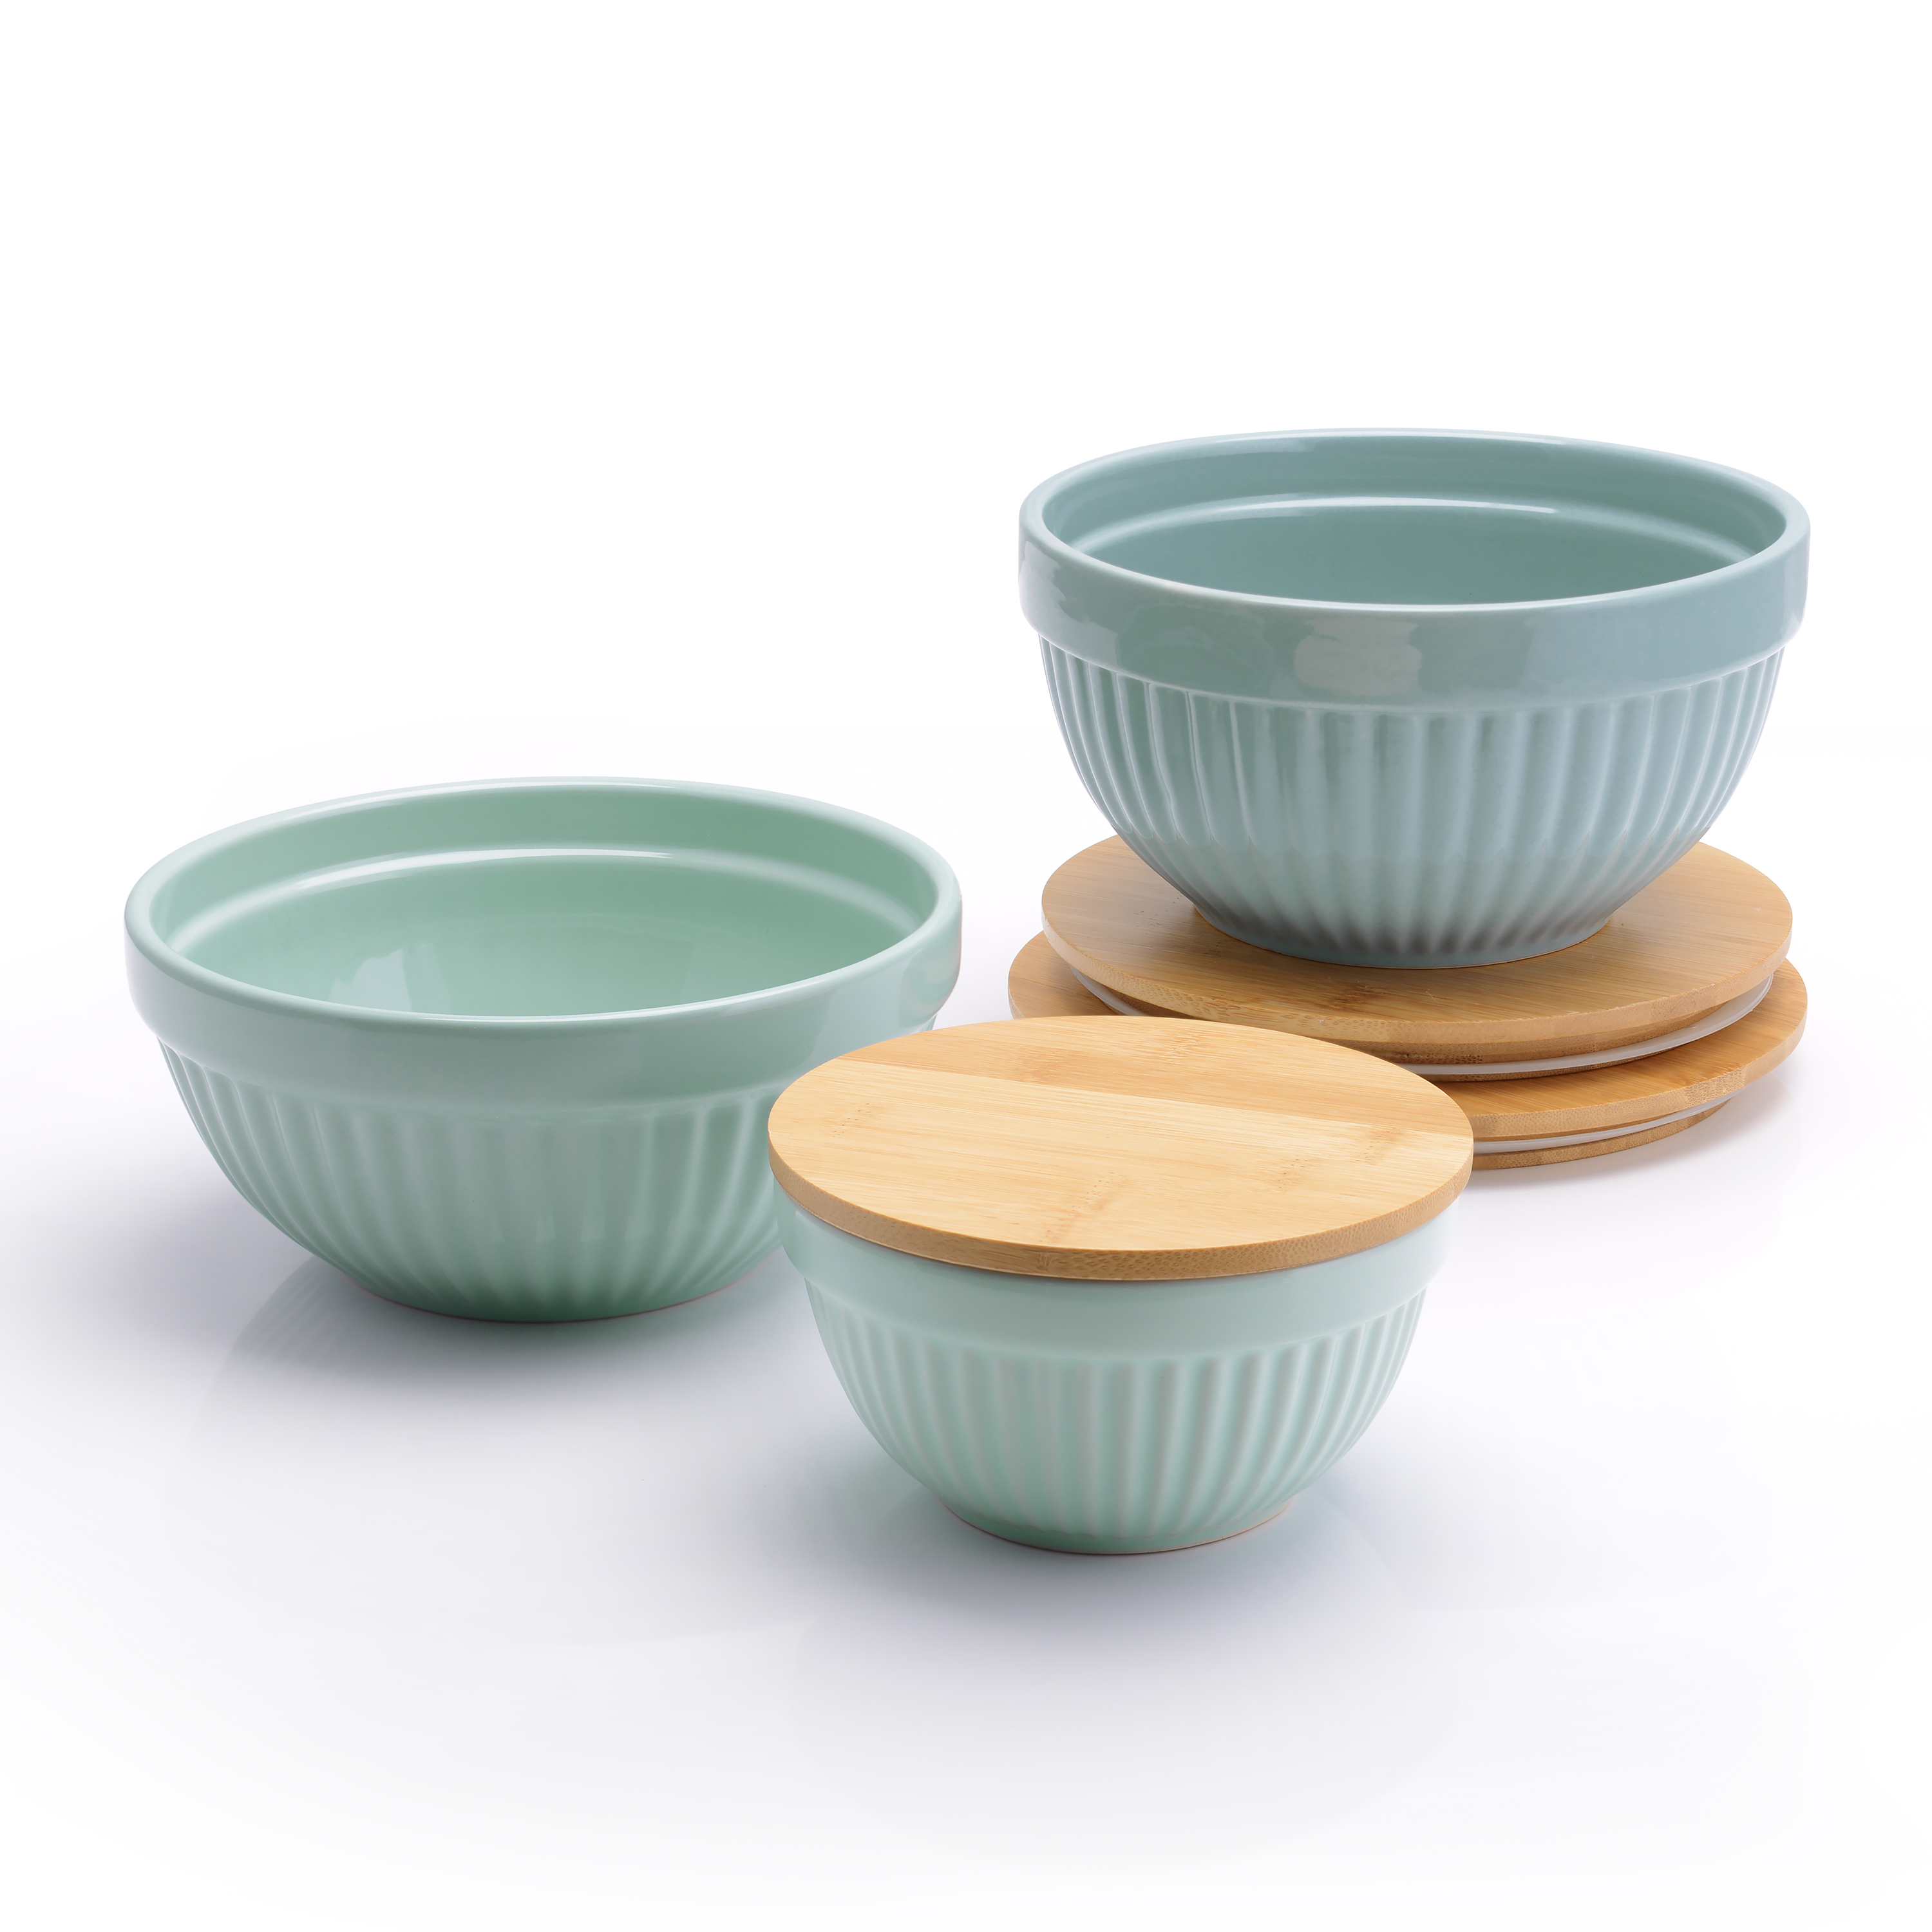 Better Homes & Gardens 3 Piece Ceramic Mixing Bowl Set, Aqua - image 5 of 8